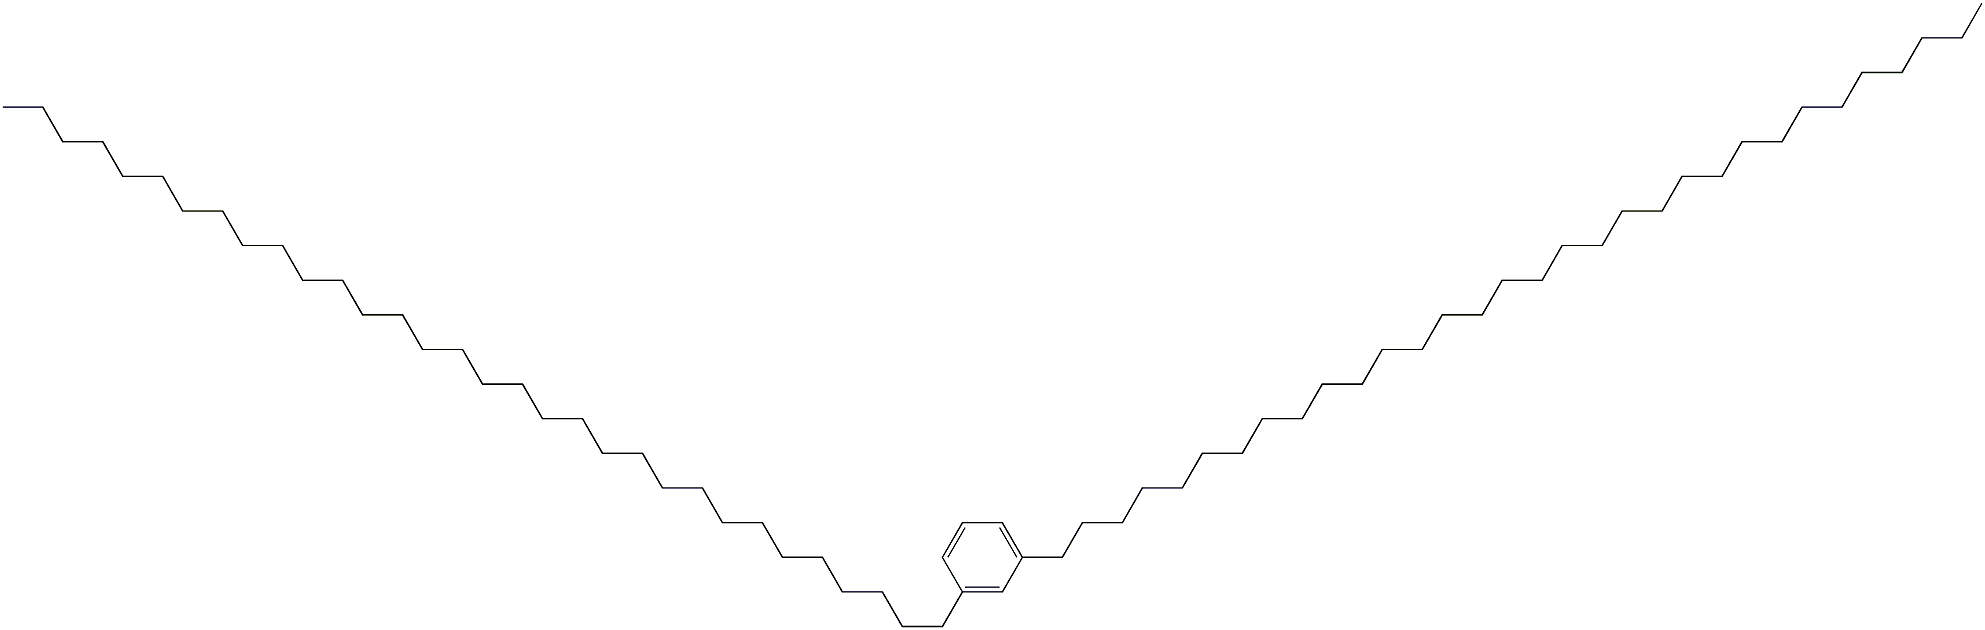 1,3-Di(dotriacontan-1-yl)benzene Structure